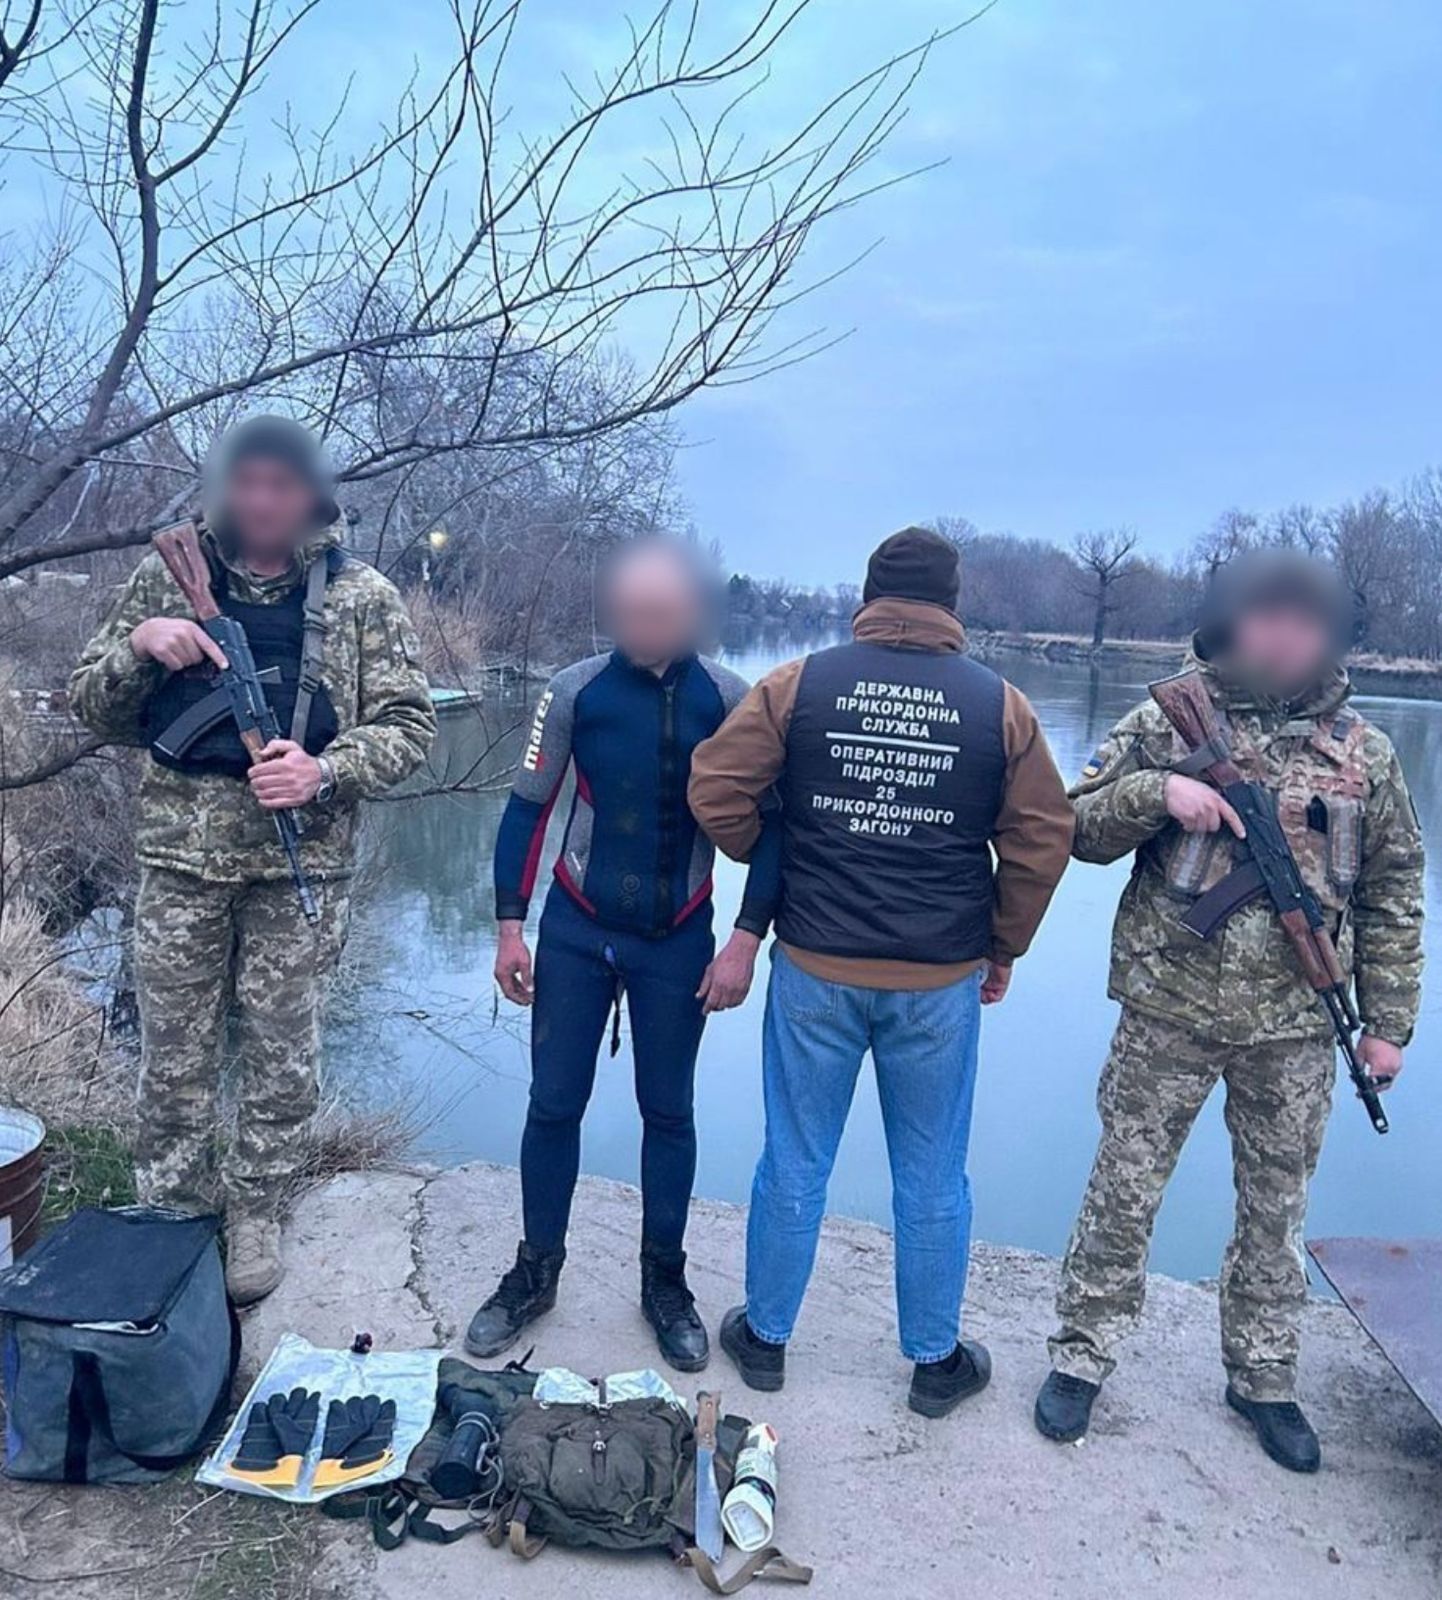 Пытался "магически исчезнуть" из Украины: пограничники задержали одессита в маске и мантии. Фото и видео